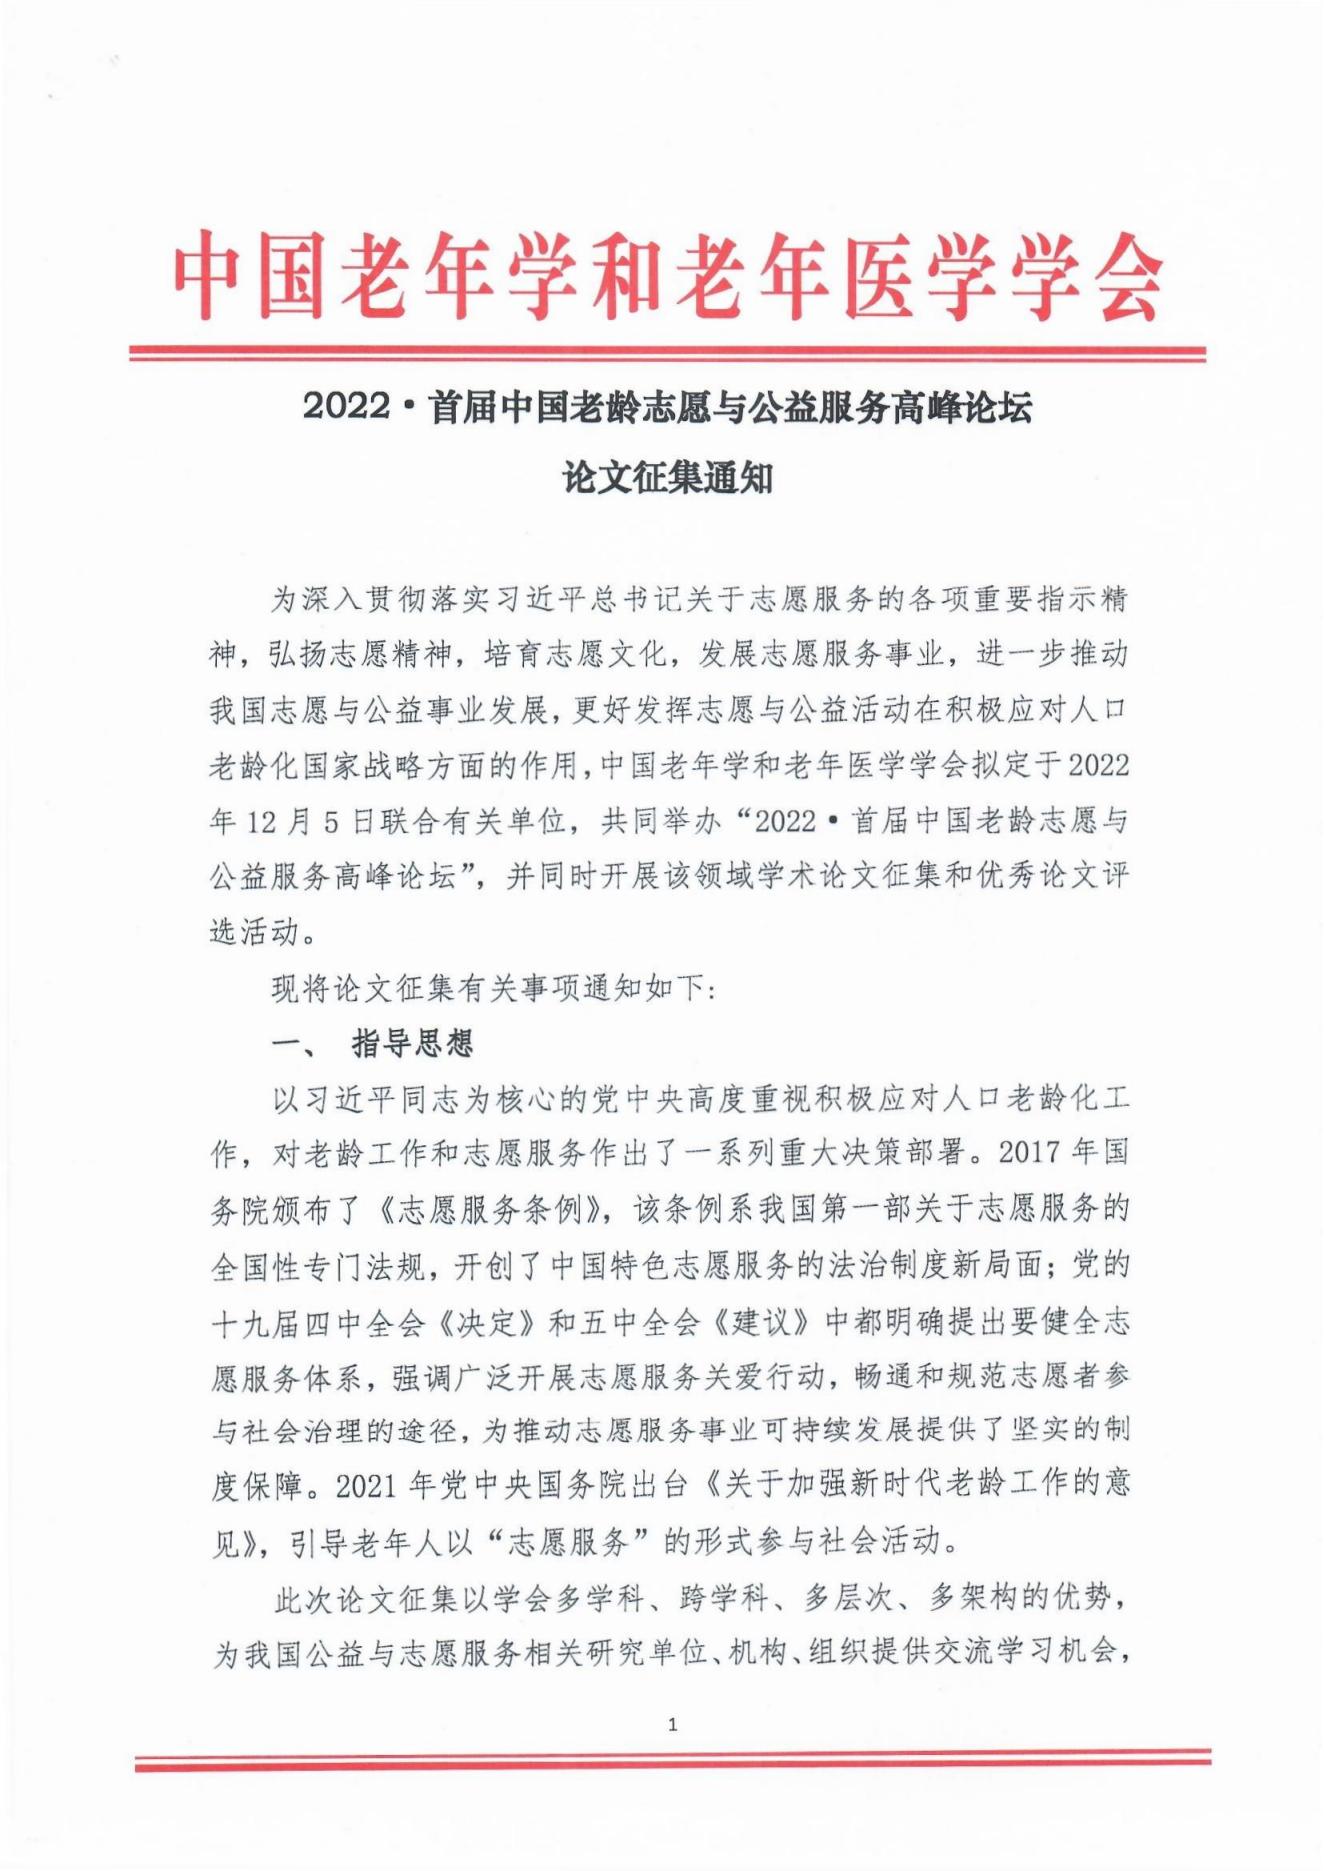 2022年首届中国老龄志愿与公益服务高峰论坛论文征集通知_00.jpg